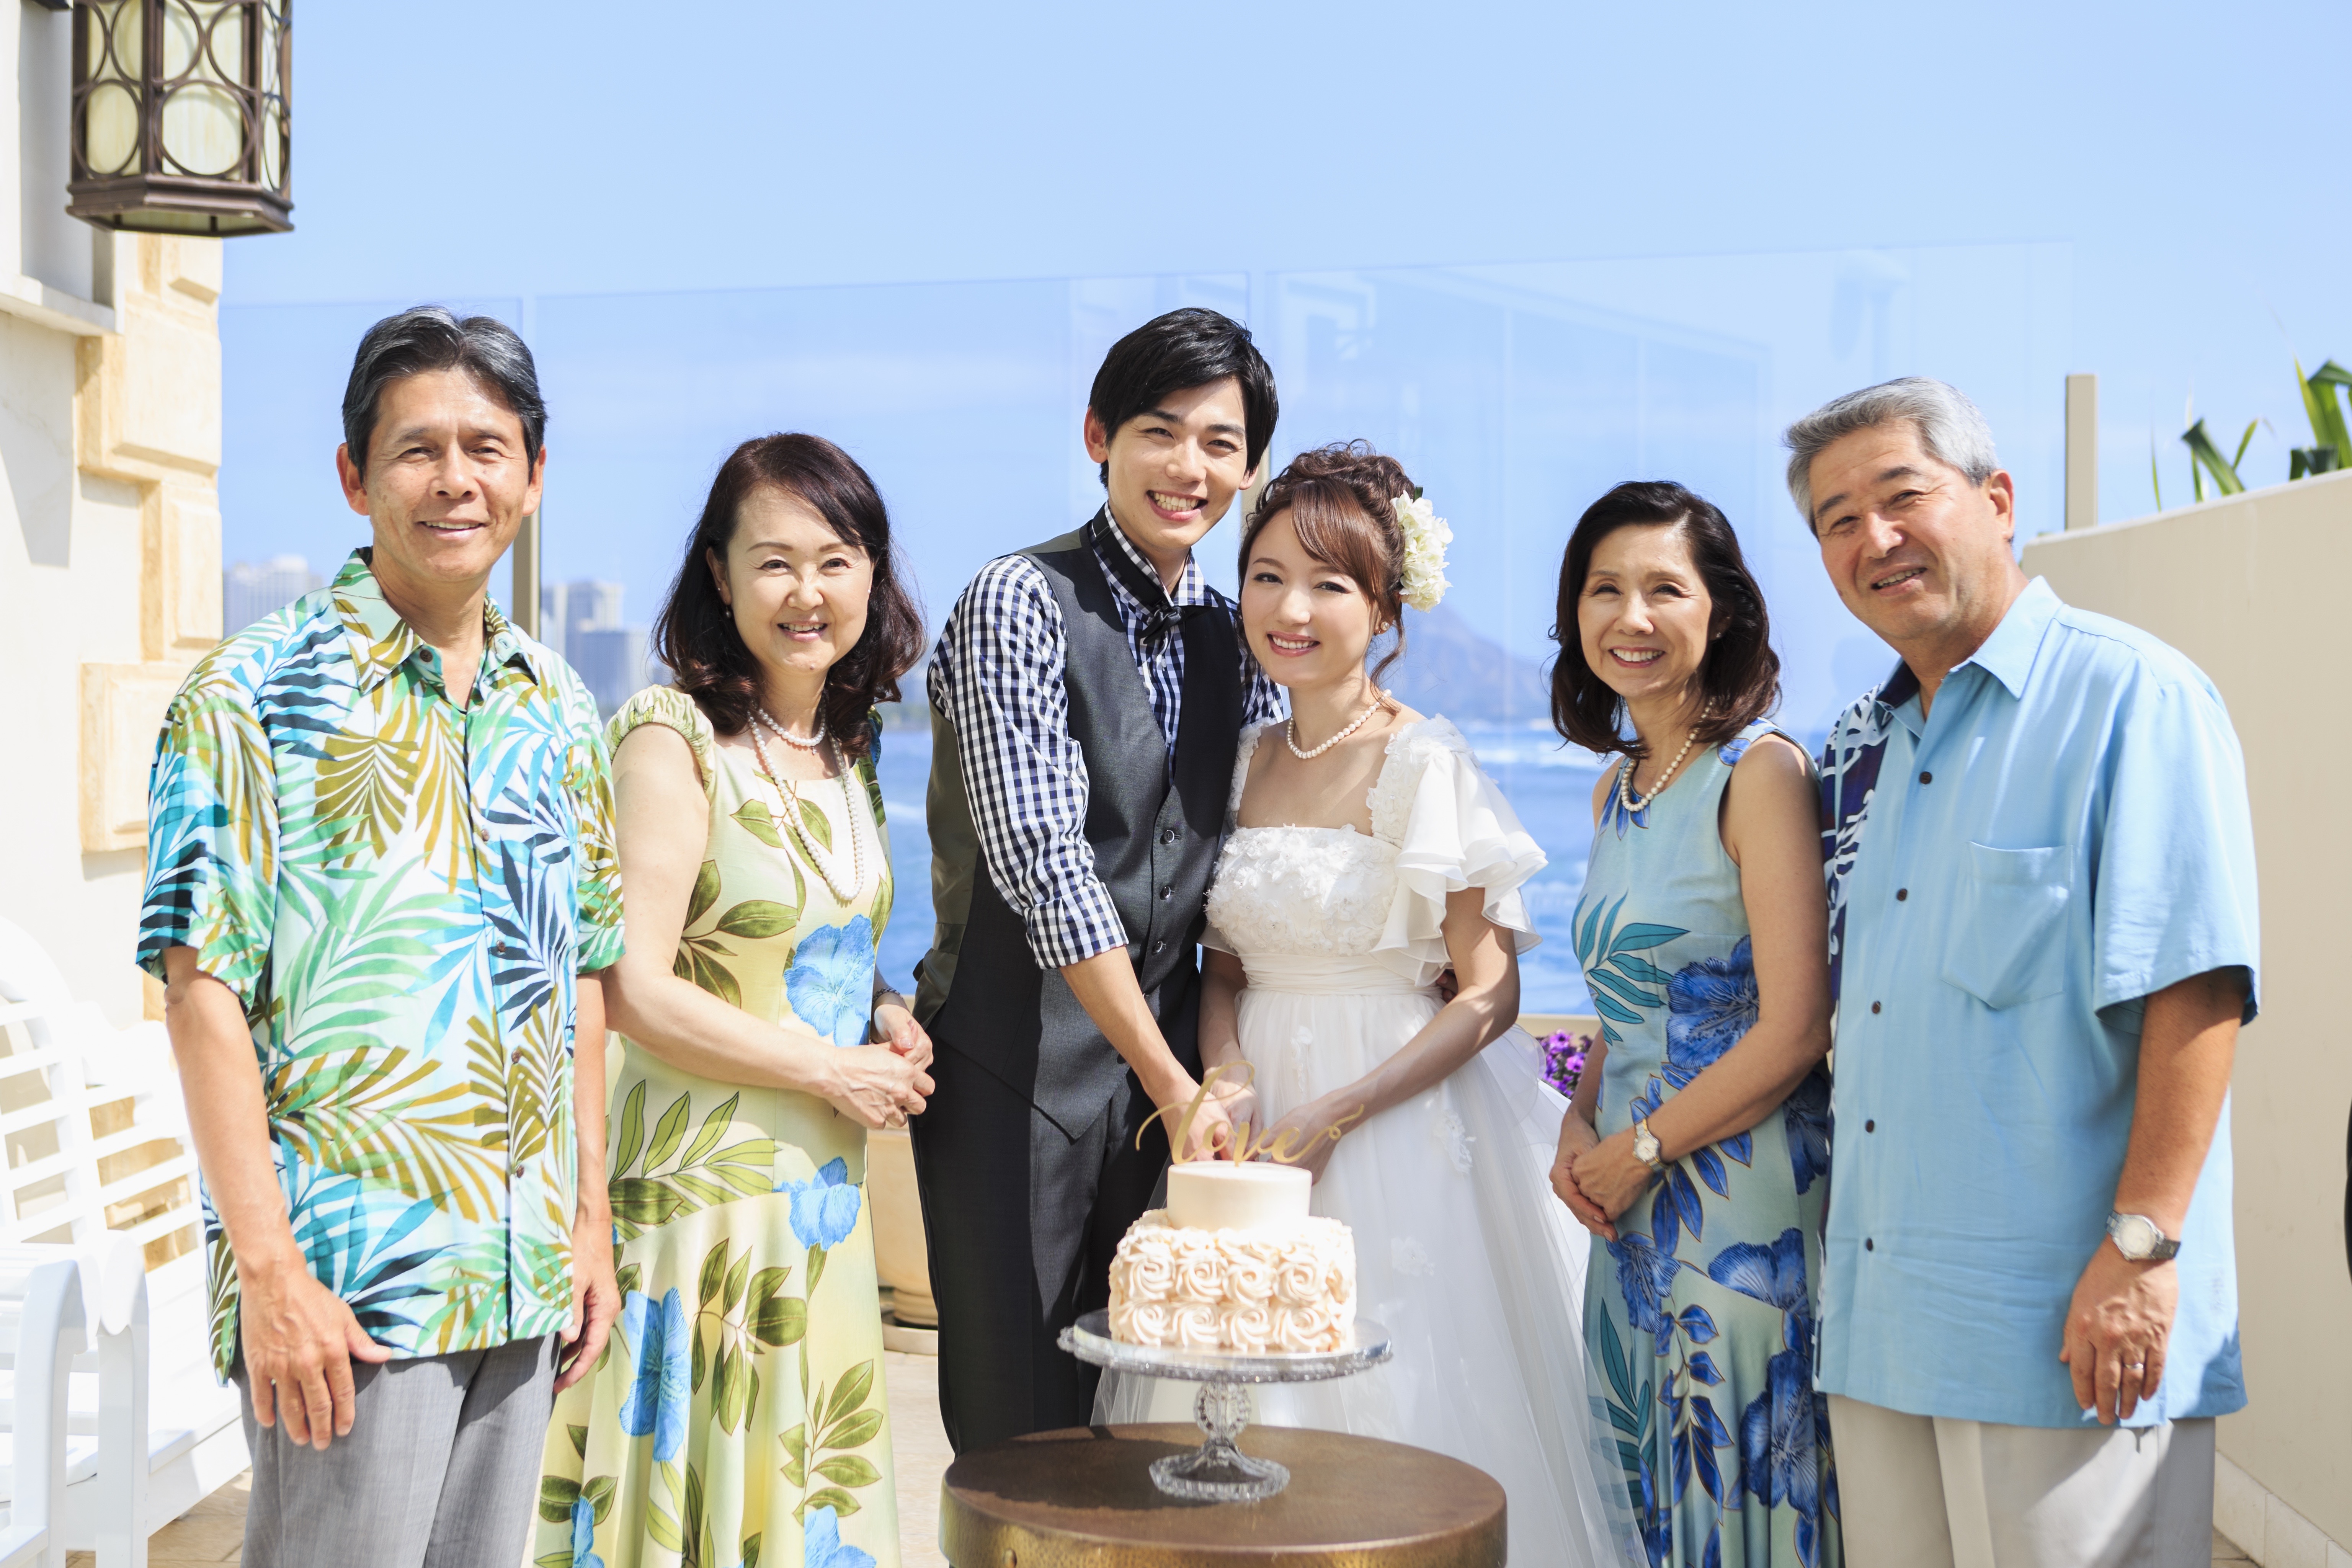 かりゆし 沖縄 結婚式 服装 親族